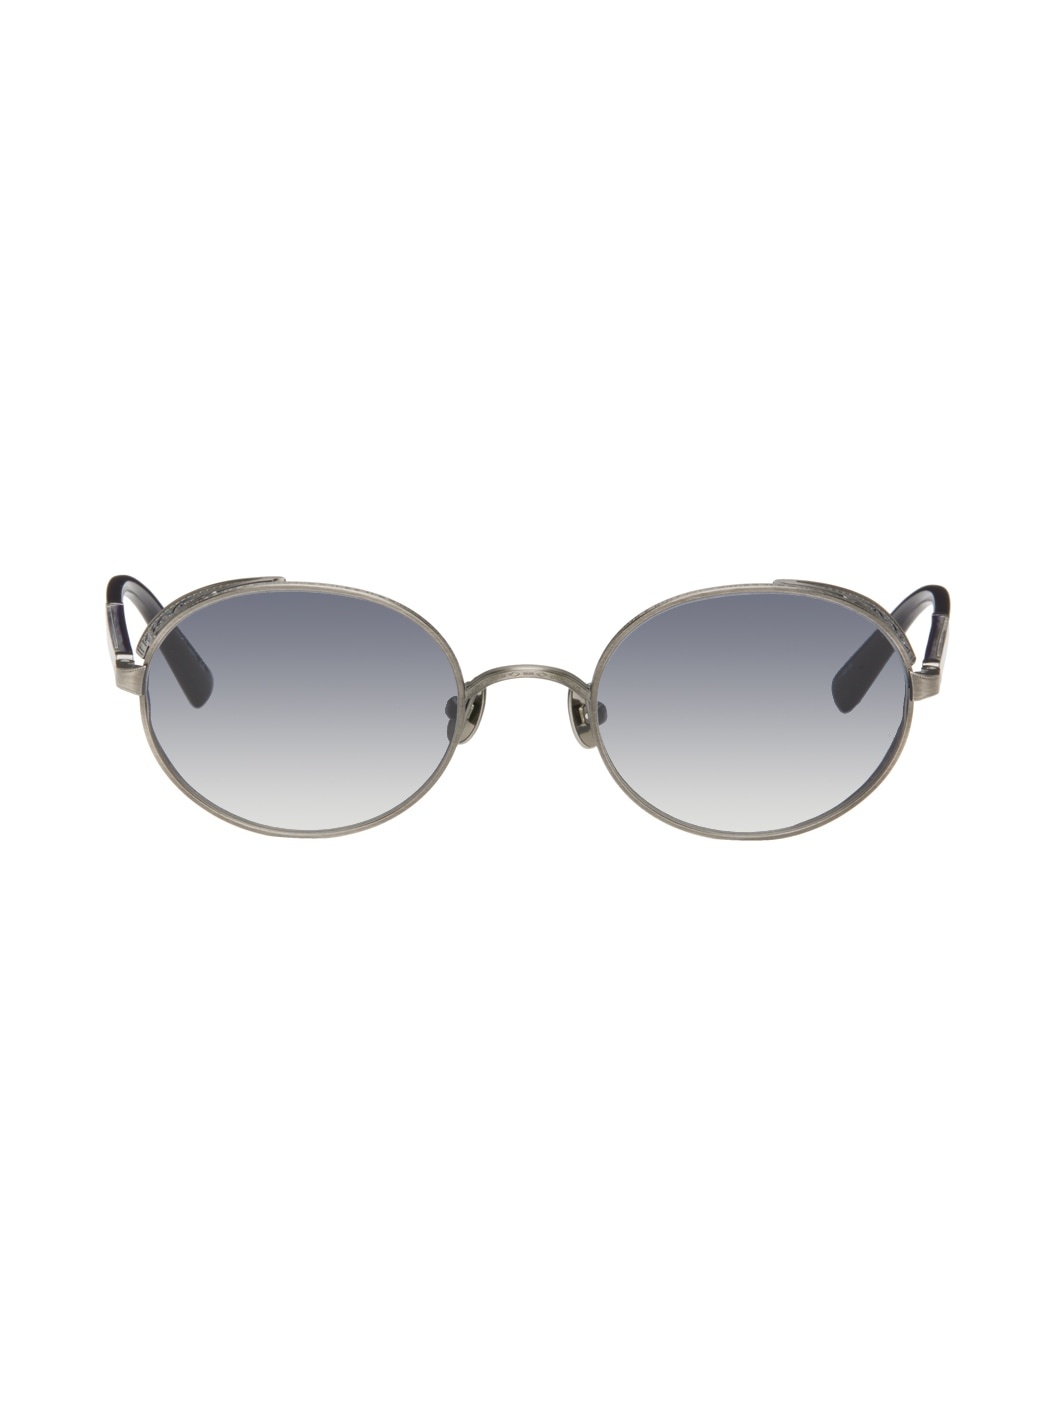 Silver M3137 Sunglasses - 1